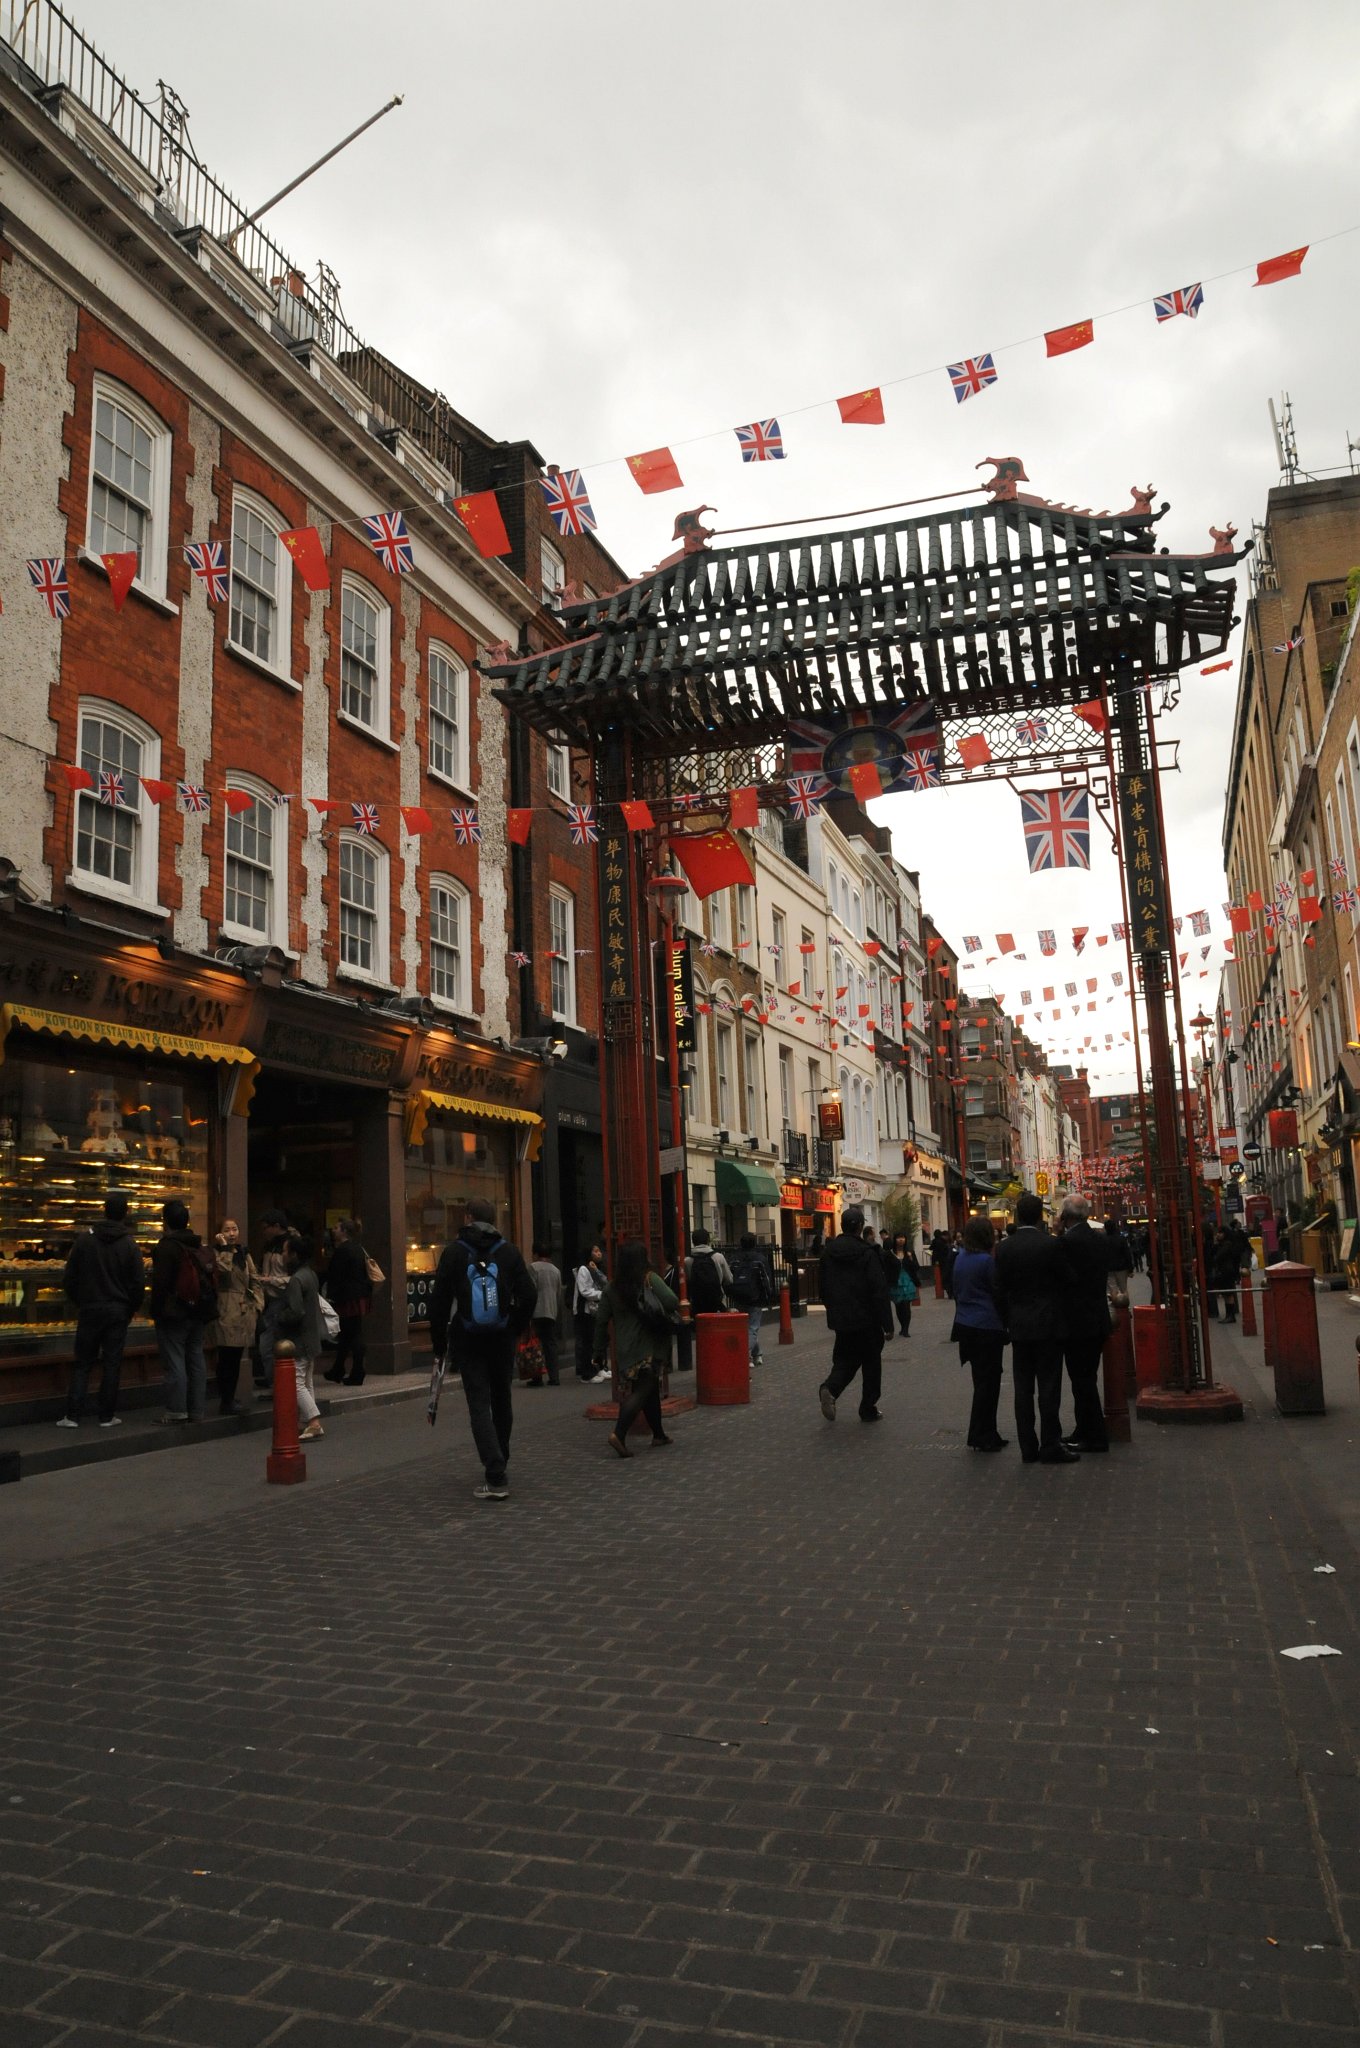 DSC_6038_1.jpg - Londýnská čínská čtvrť je oblast v Soho v obvodu Westminster kolem Gerrard Street. Nachází se zde velký počet čínských restaurací, obchodů s potravinami a suvenýry. Jednou z nejznámějších restaurací je Wong Kei.